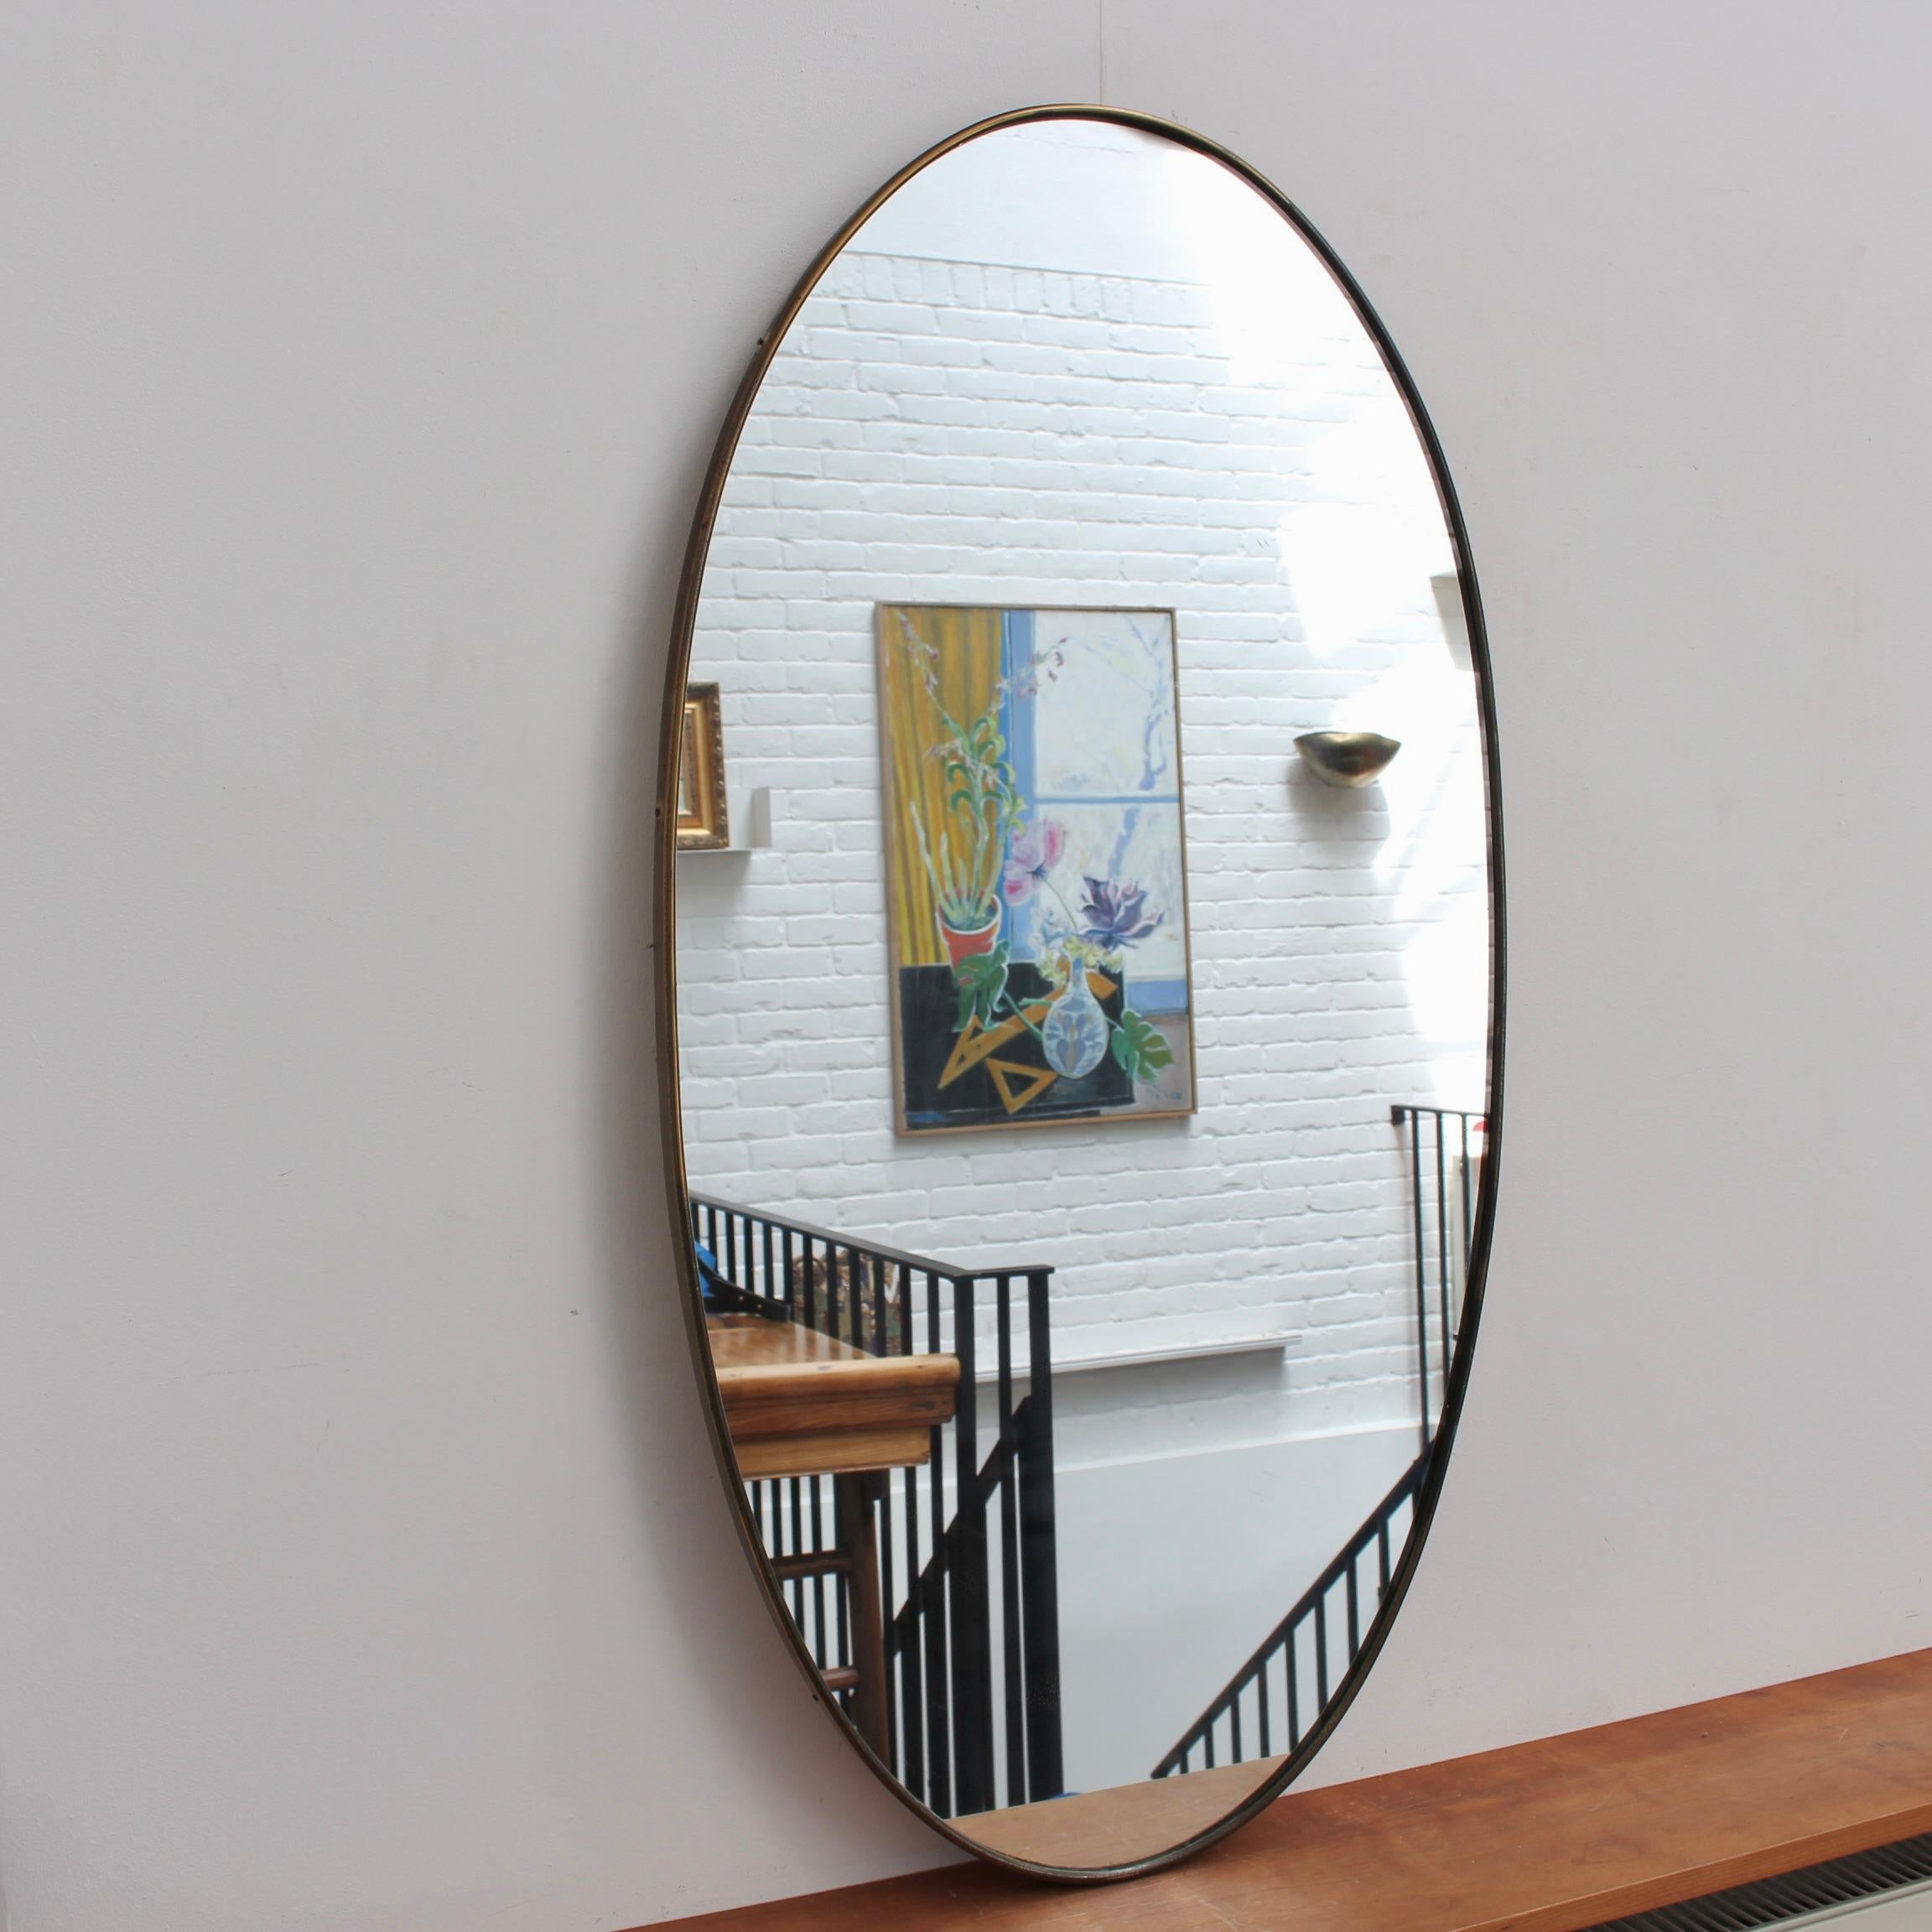 Miroir mural italien du milieu du siècle avec cadre en laiton (circa 1960s). Le miroir est de forme classique et se distingue par son style moderne. Une patine noble se développe sur le cadre en laiton - ainsi que quelques entailles et marques liées